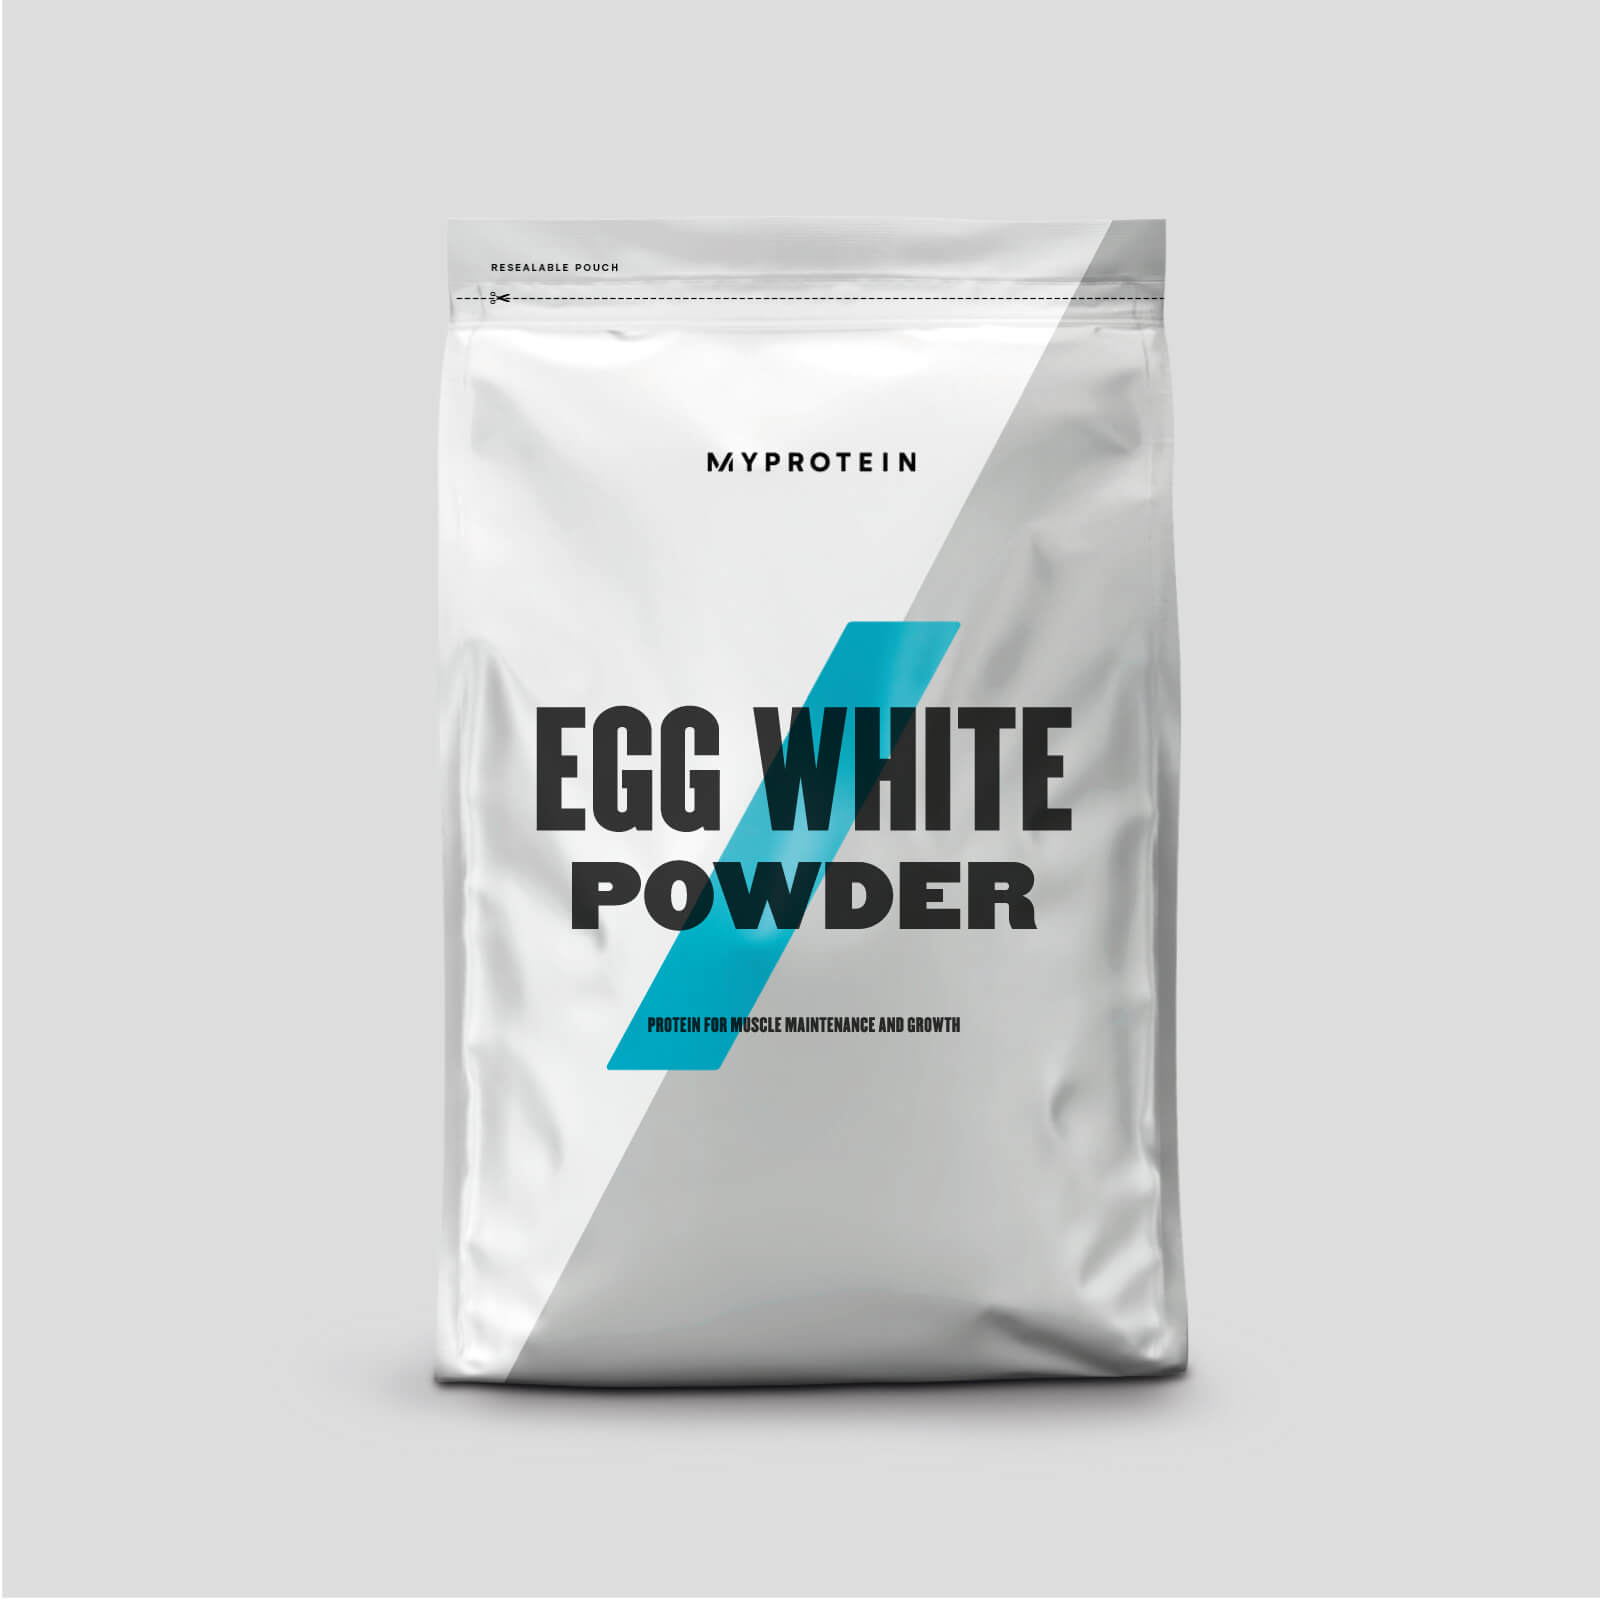 Myprotein Egg White Powder - 2.5kg - Free Range Unflavoured